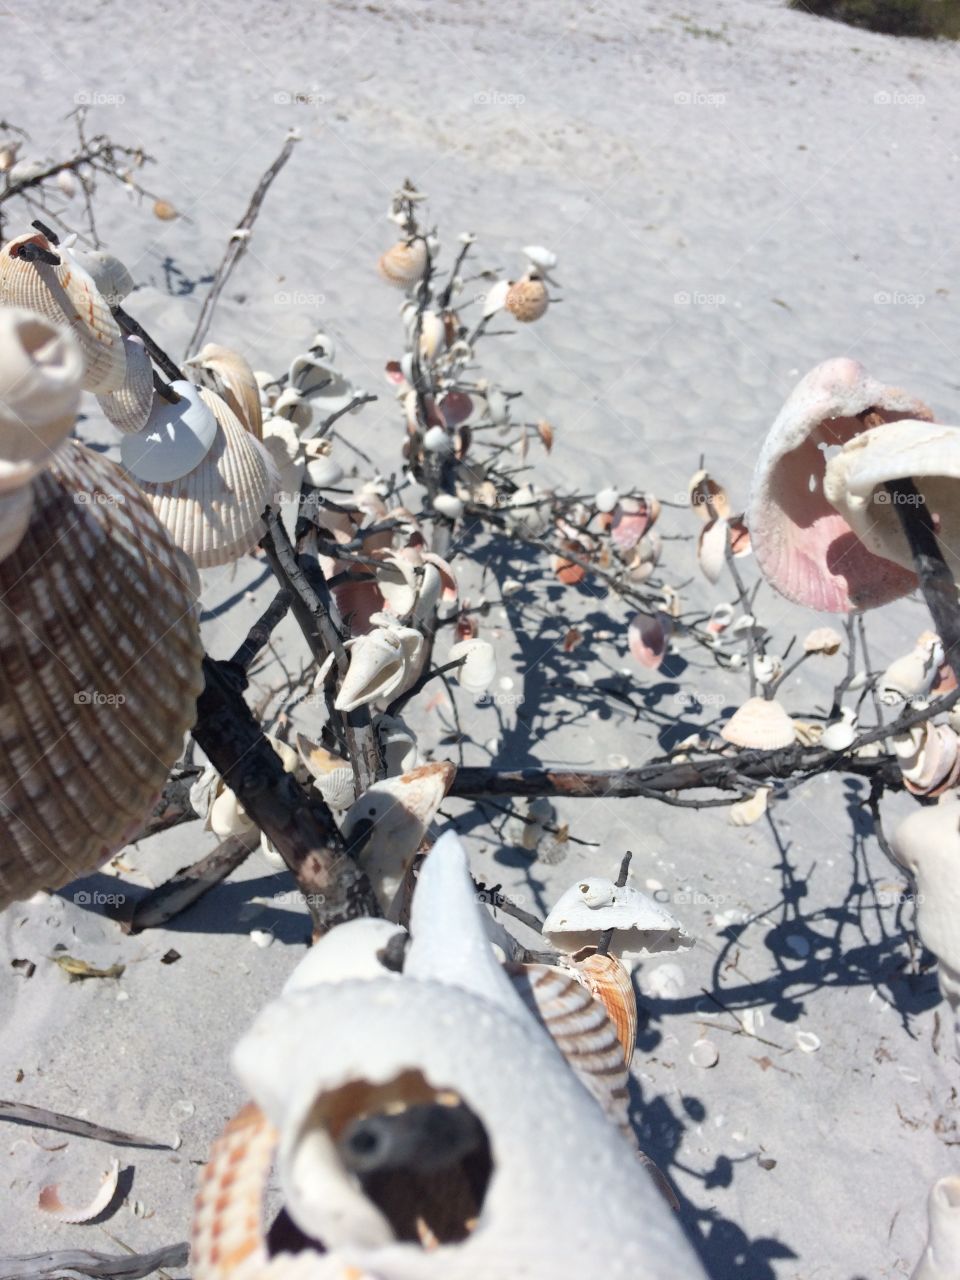 #seashells #shells #beach #sand #tree #creative #art #sculpture #summer 